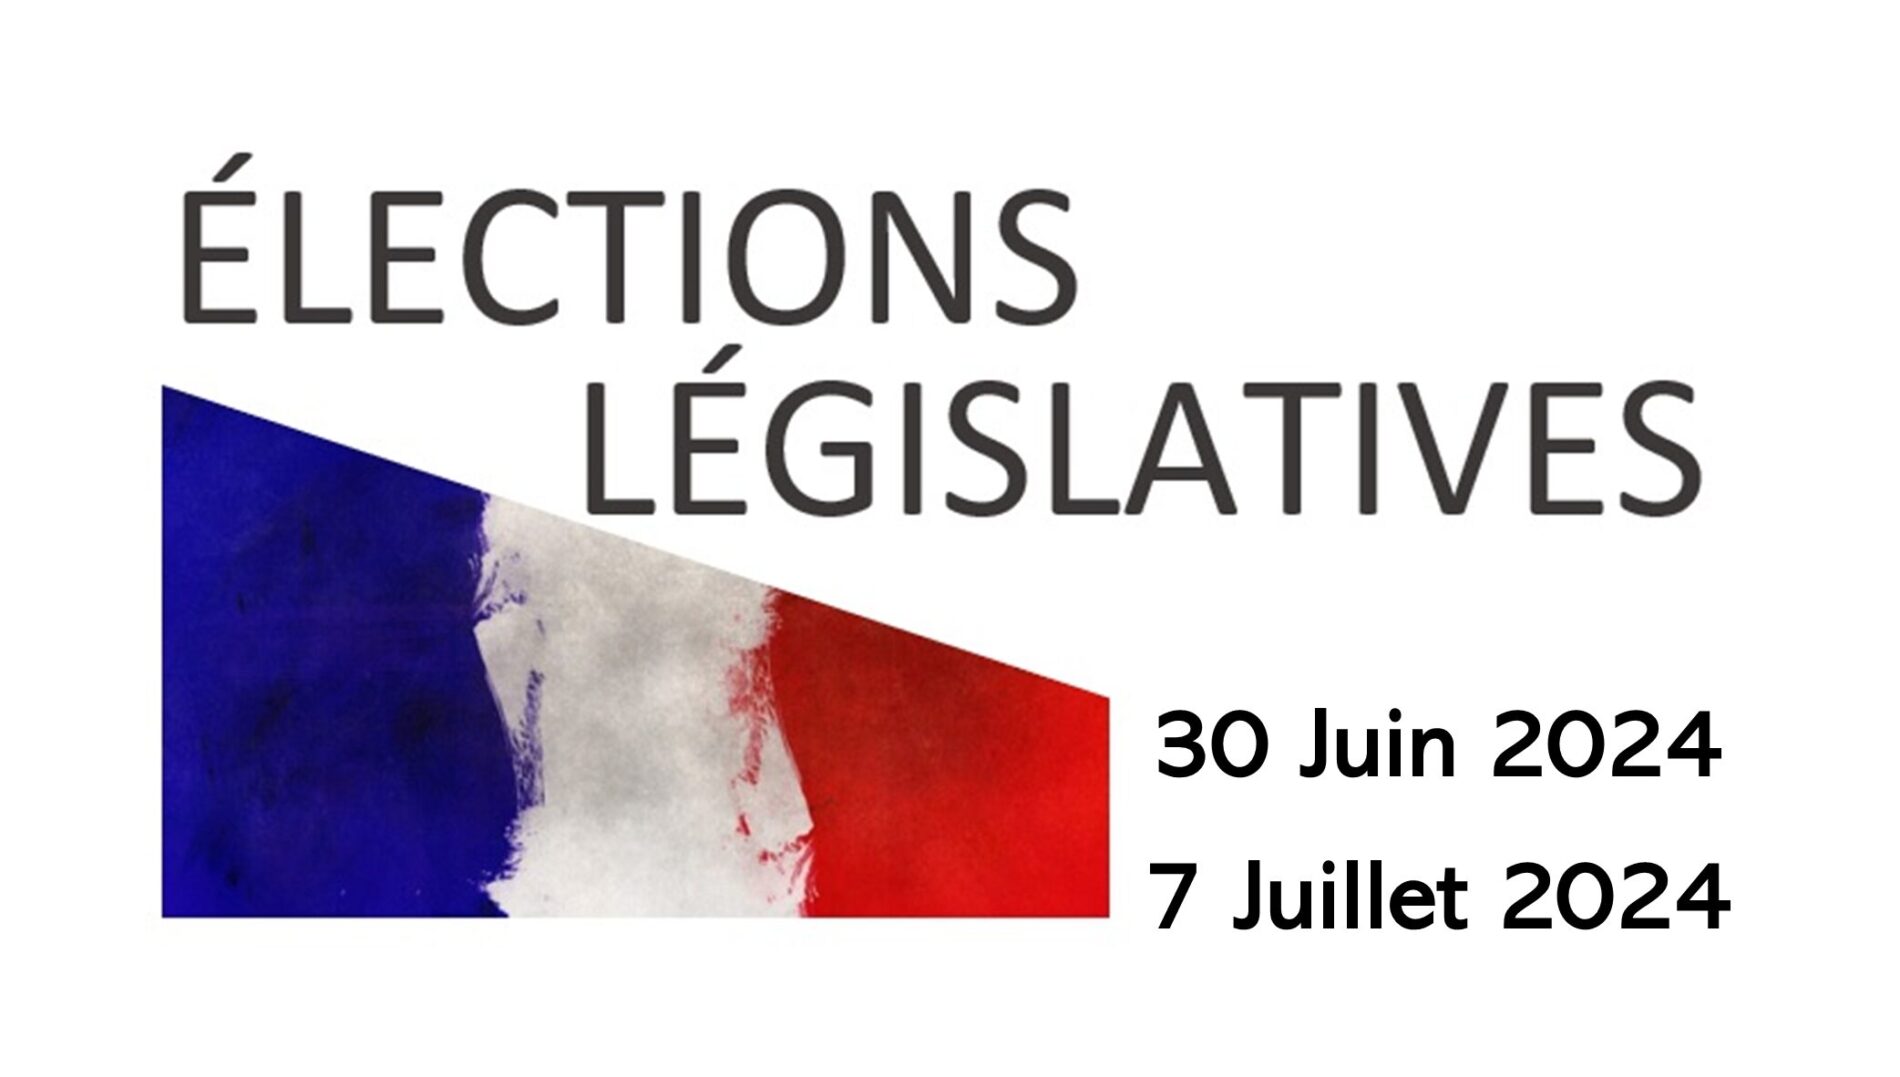 Lire la suite à propos de l’article Elections législatives anticipées les dimanches 30 juin et 7 juillet 2024